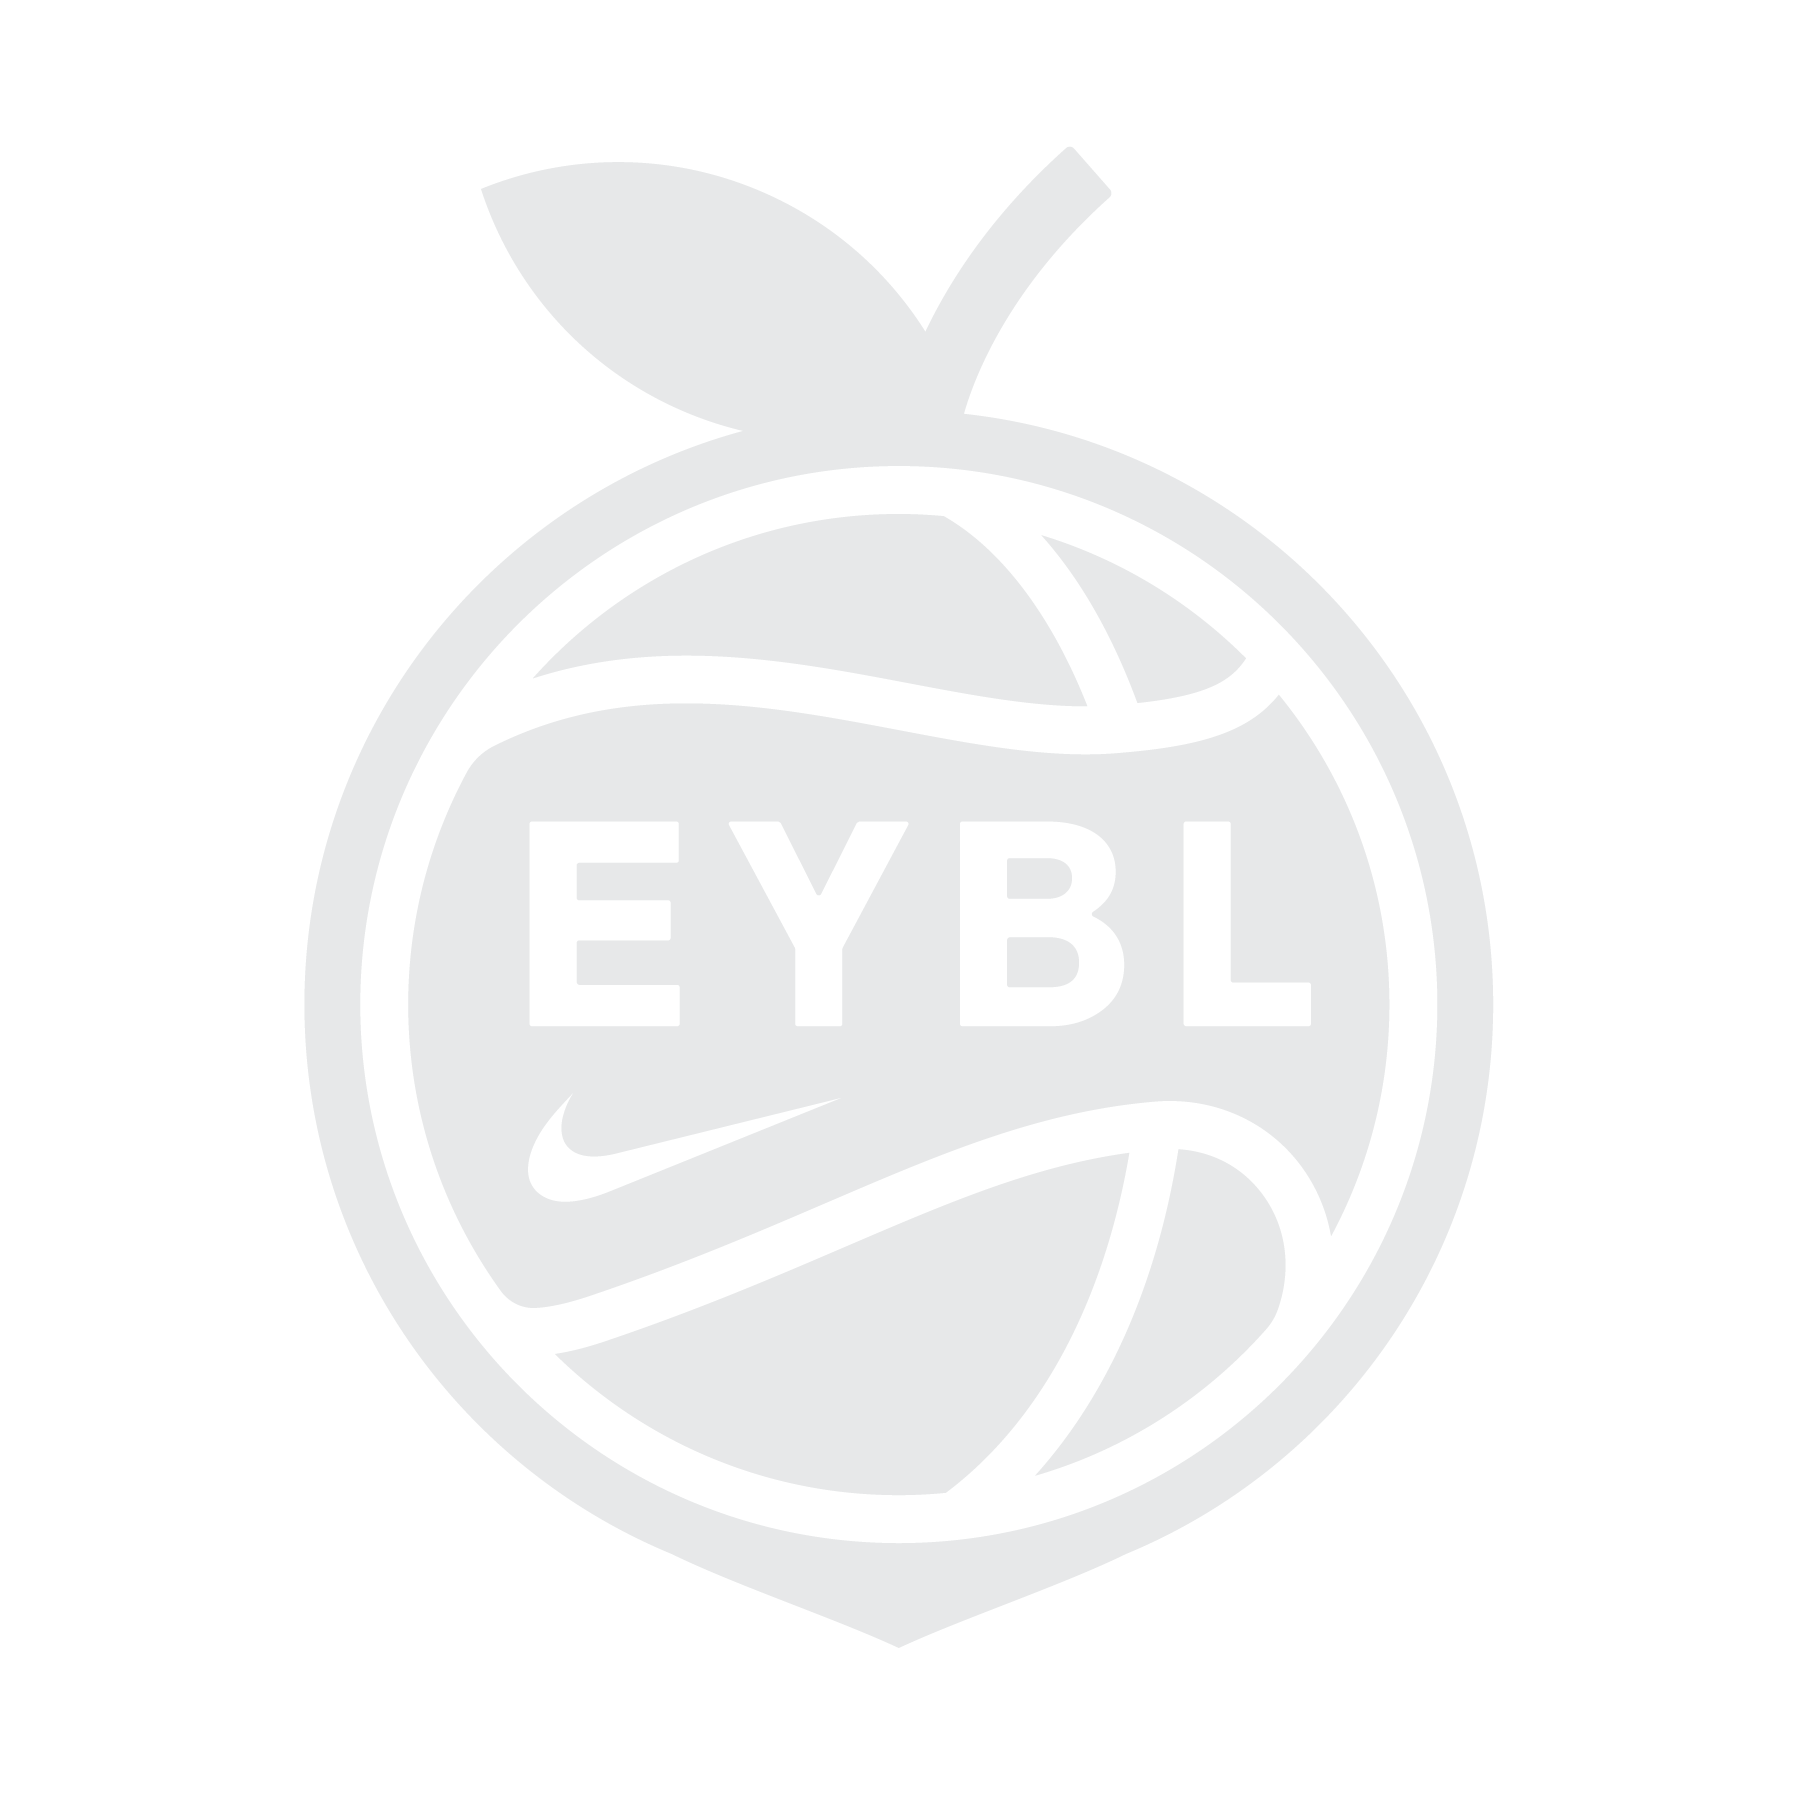 Nike EYBL